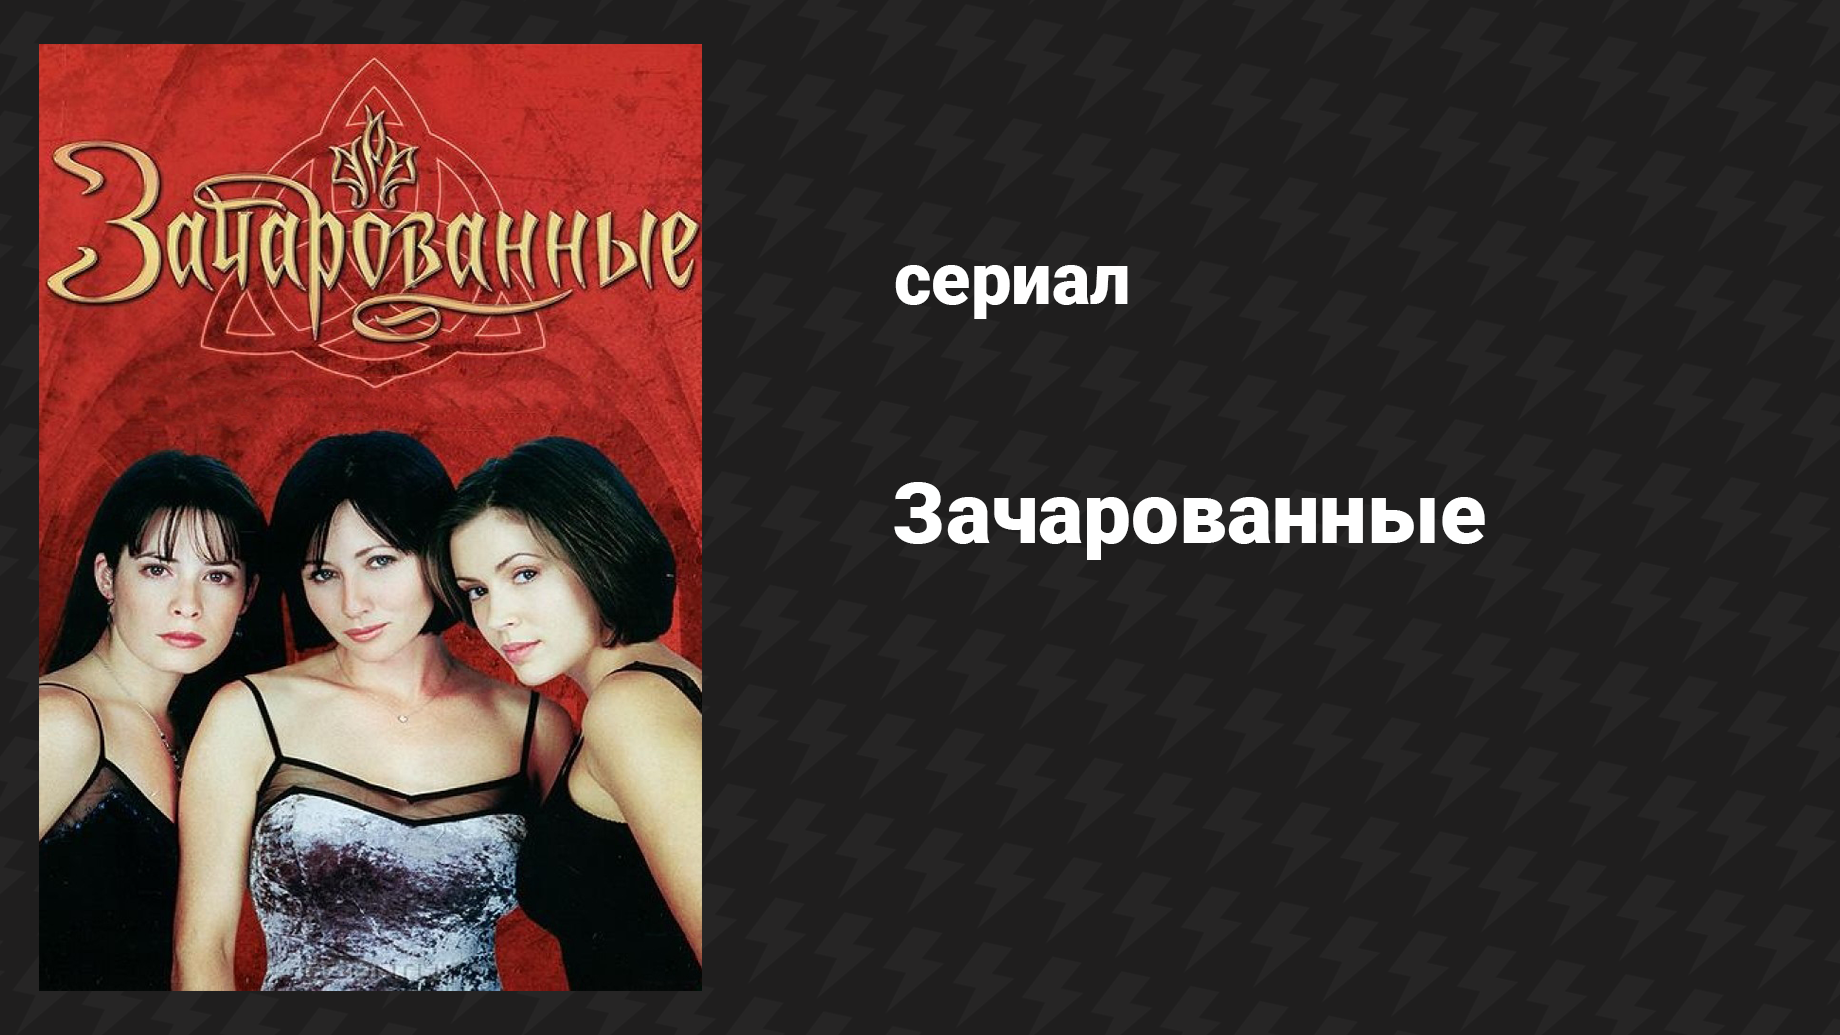 Зачарованные 1 сезон 17 серия «Забытая сделка» (сериал, 1999)